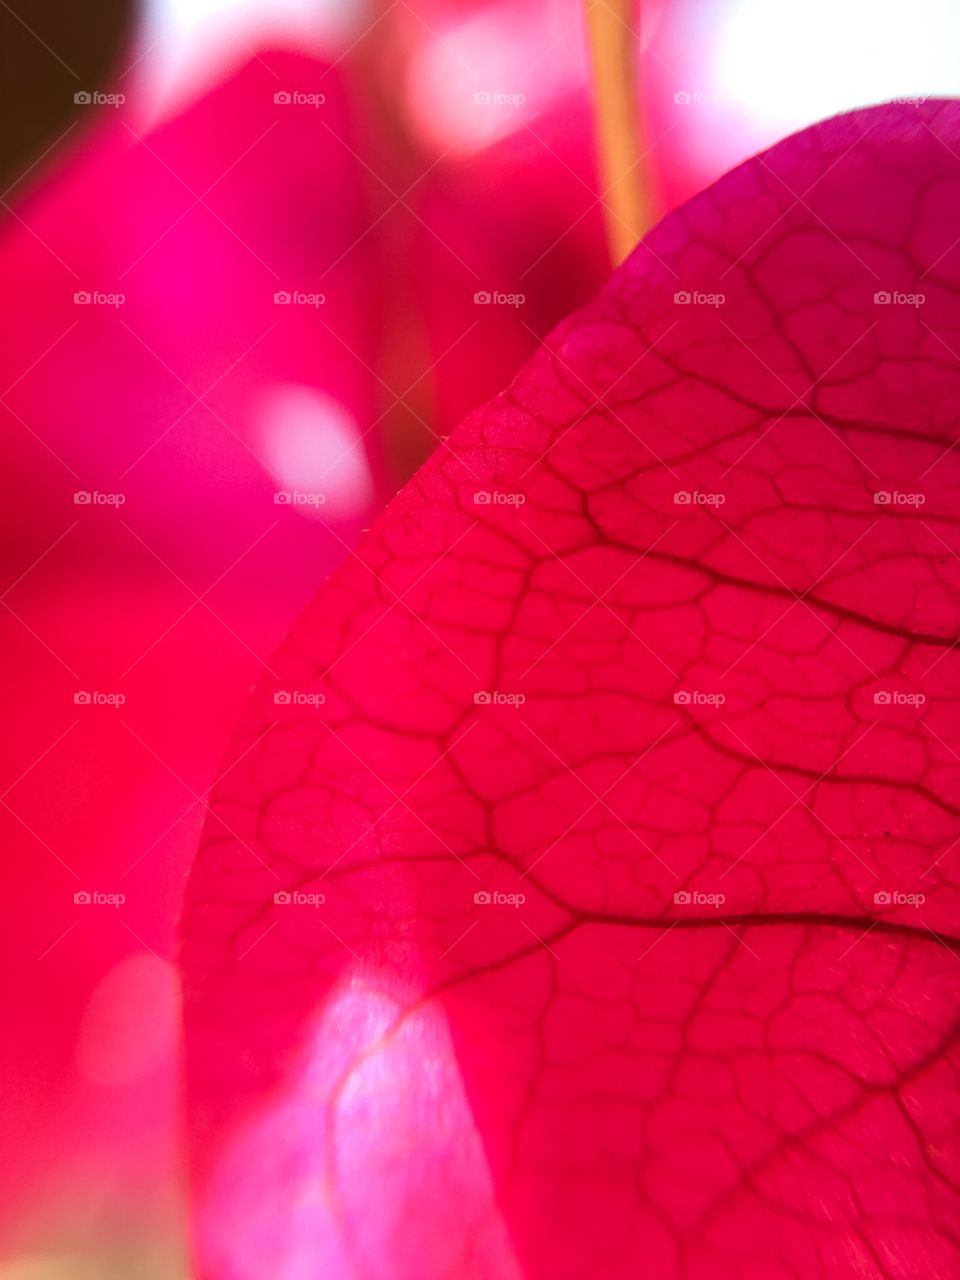 Pink leaf close up